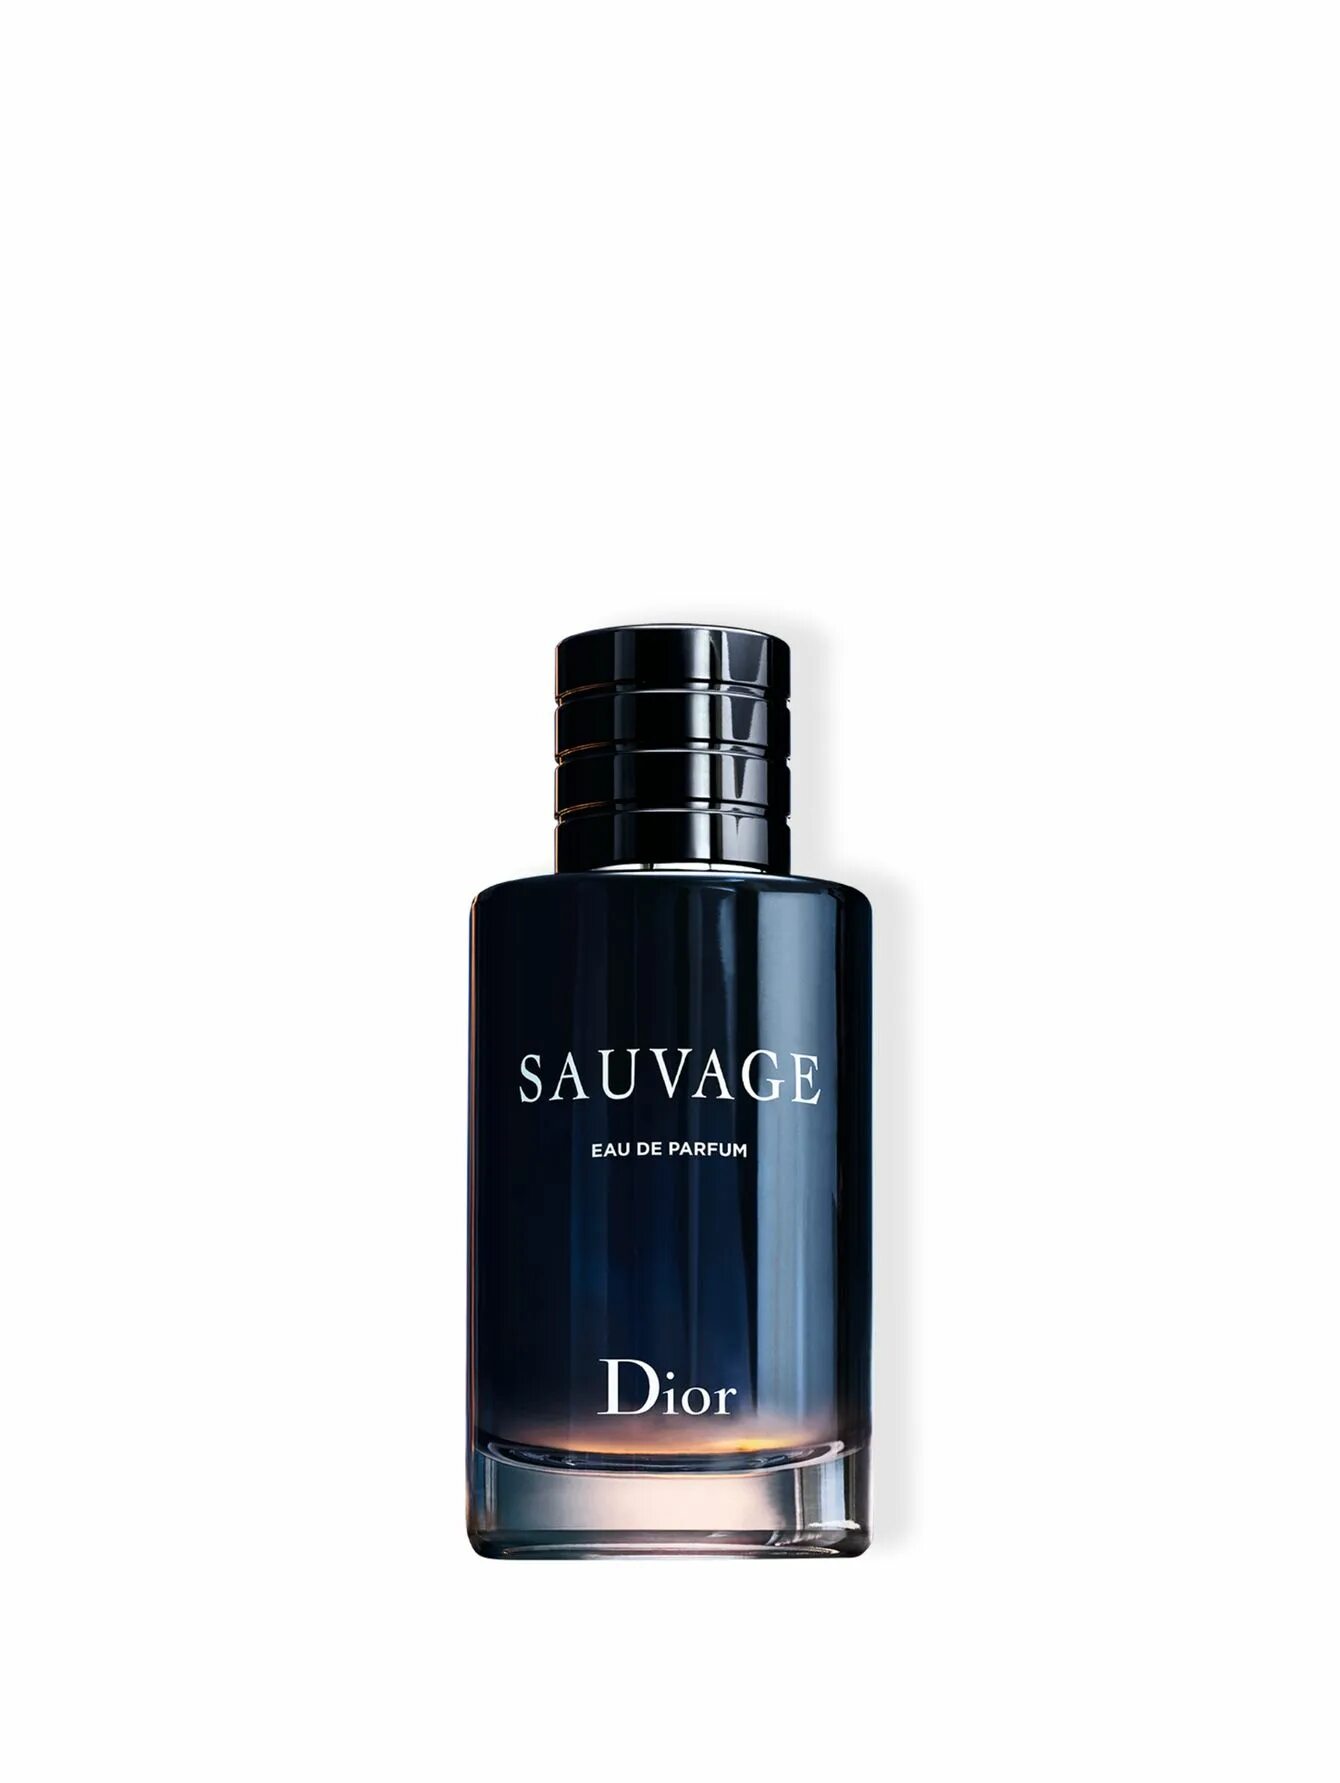 Christian Dior sauvage 100 ml. Christian Dior sauvage Parfum 100ml. Christian Dior sauvage EDP, 100 ml. Dior sauvage EDP 100ml.